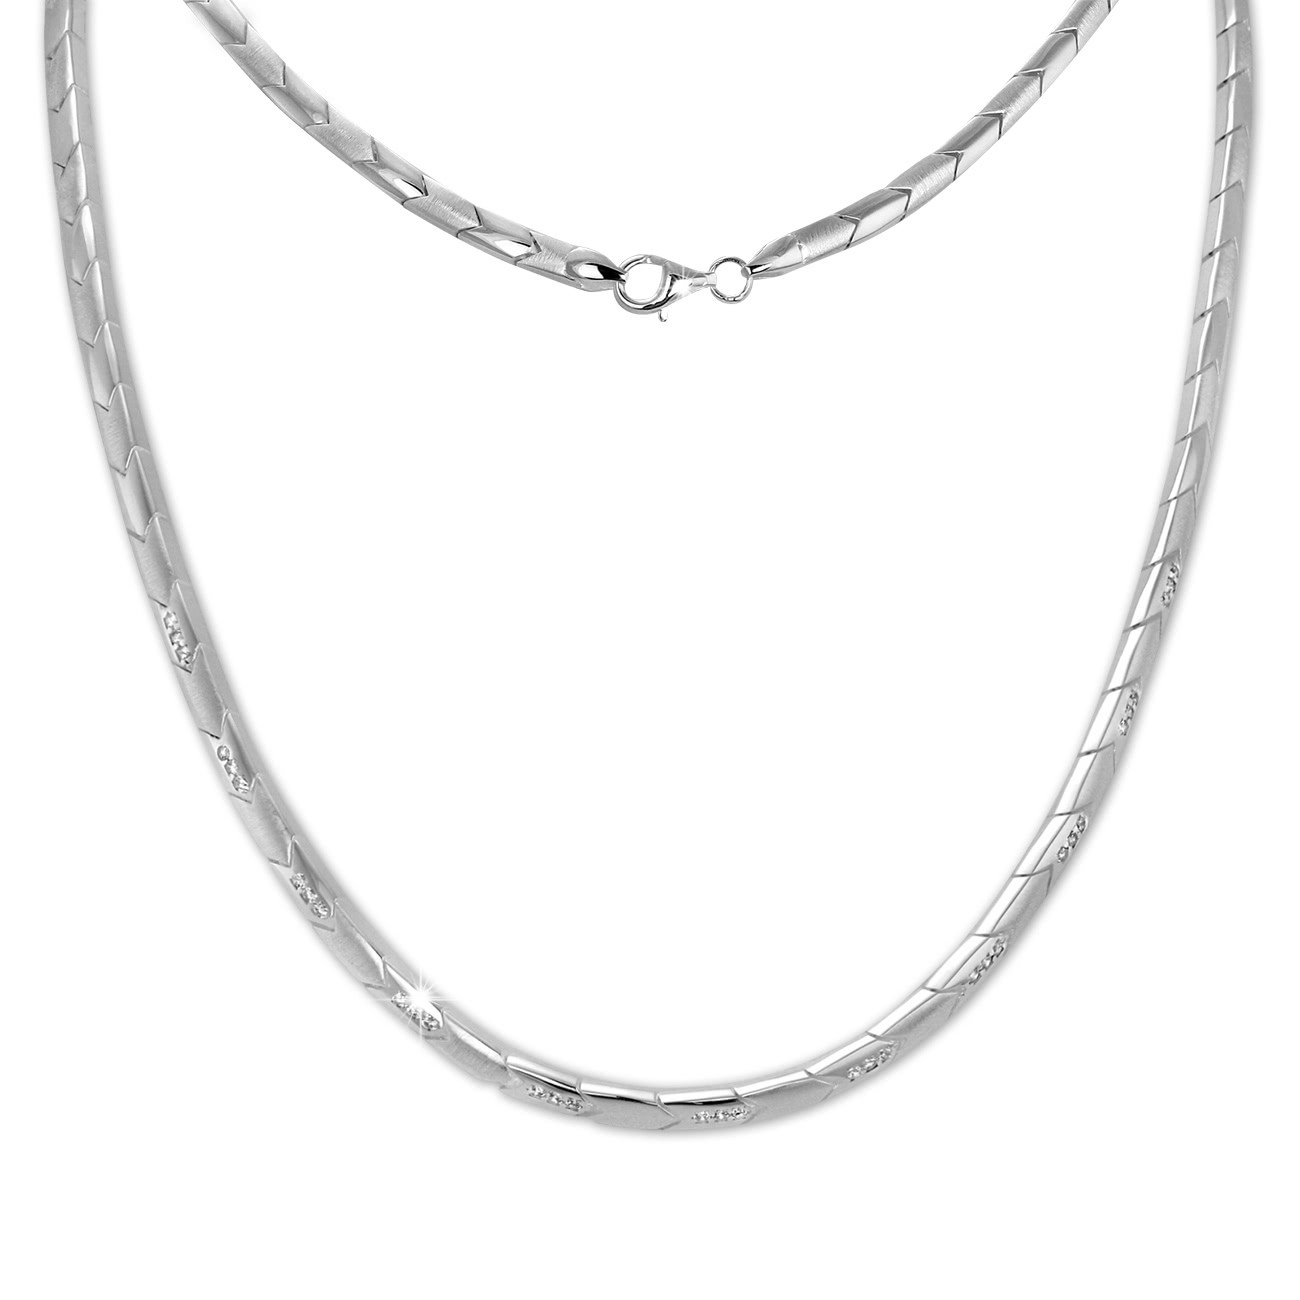 SilberDream Collier Pfeile Zirkonia weiß 925er Silber 45cm Halskette SDK451W